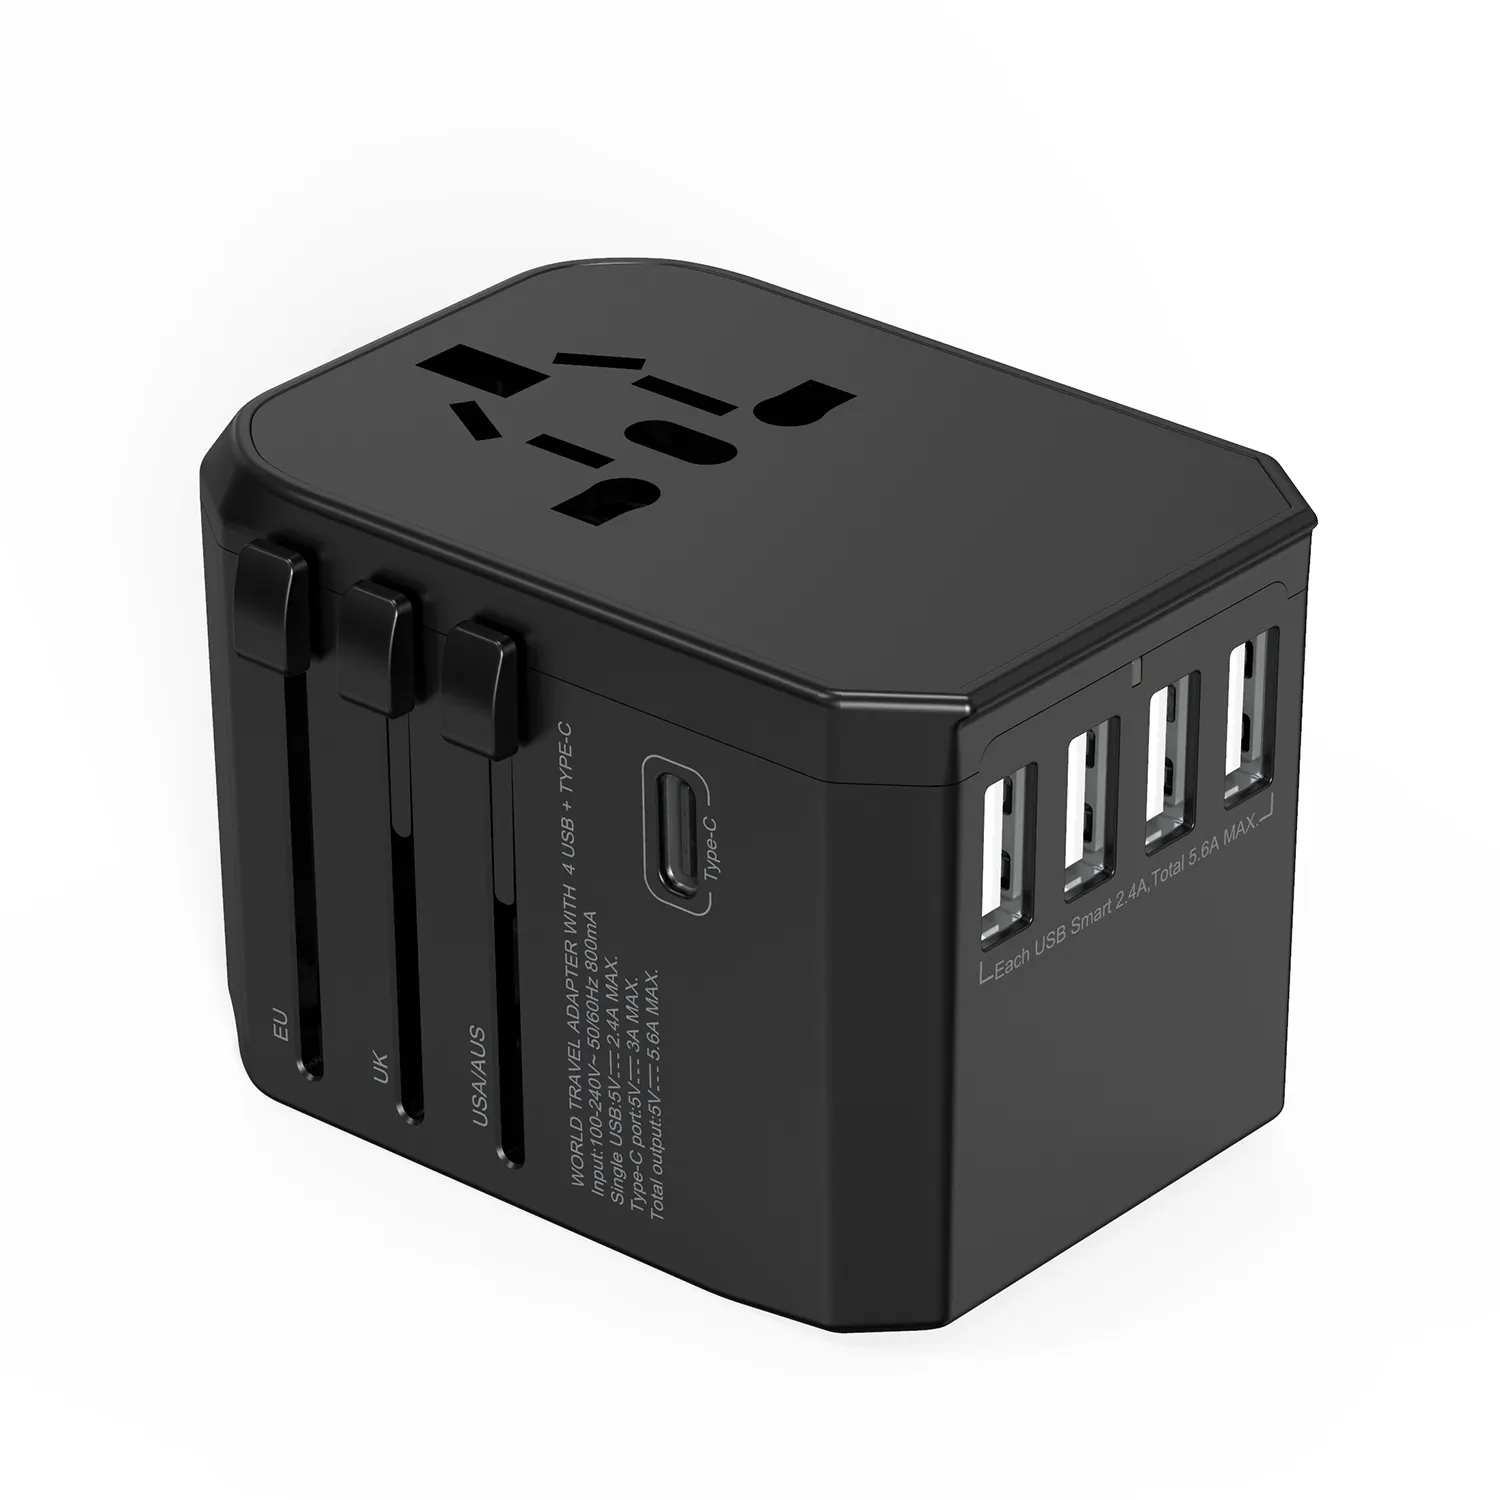 Wontravel最新製品4 USB充電器トラベルアダプターユニバーサルアダプターType-C付きインターナショナルトラベルアダプター